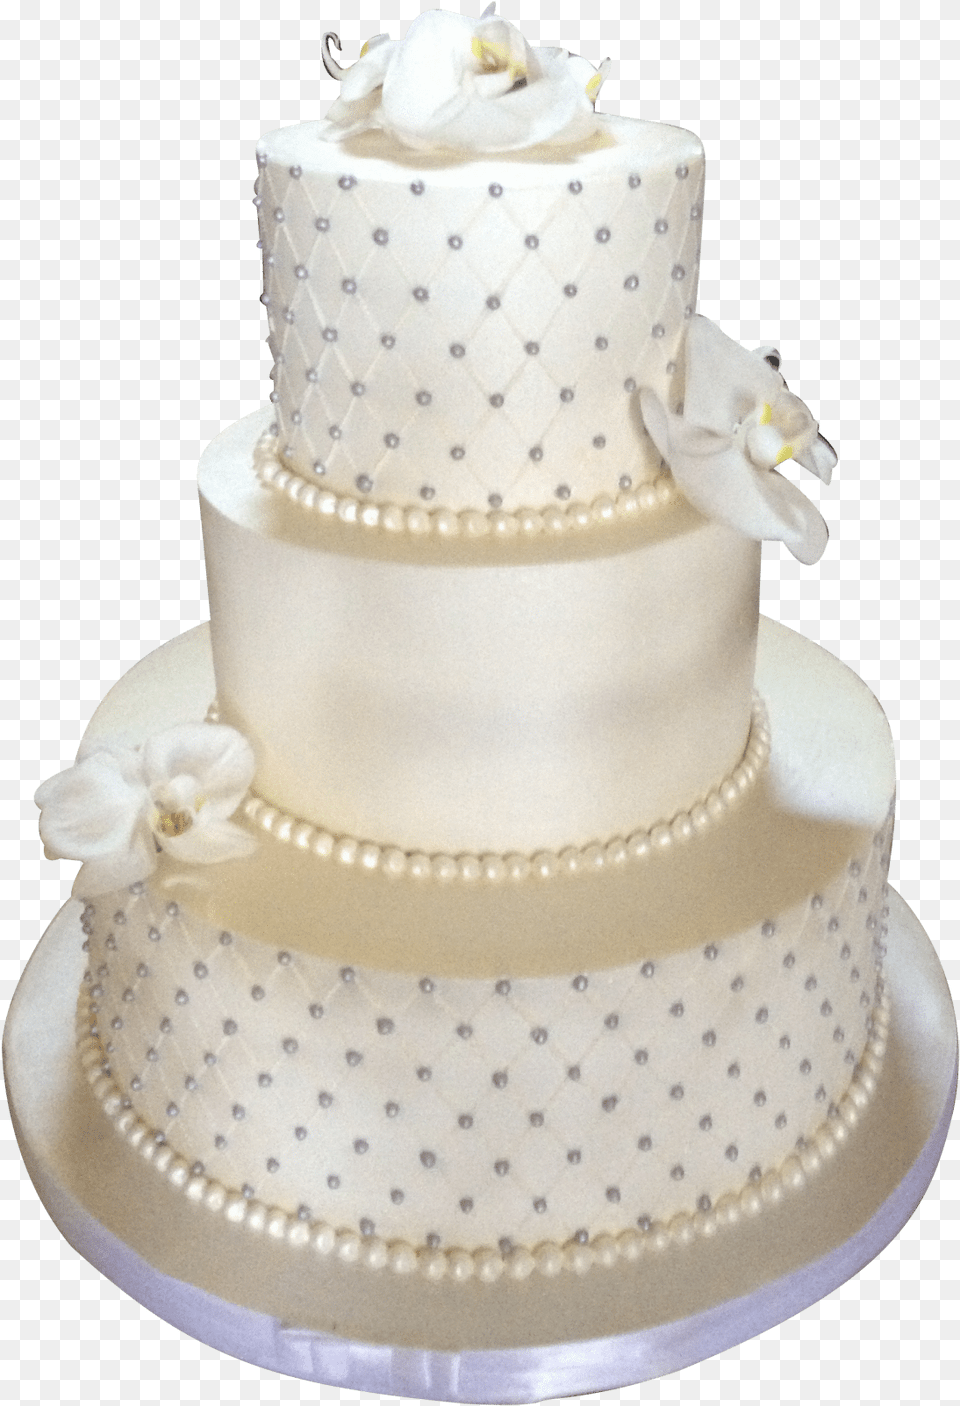 Pearls On Wedding Cake, Dessert, Food, Wedding Cake Free Png Download